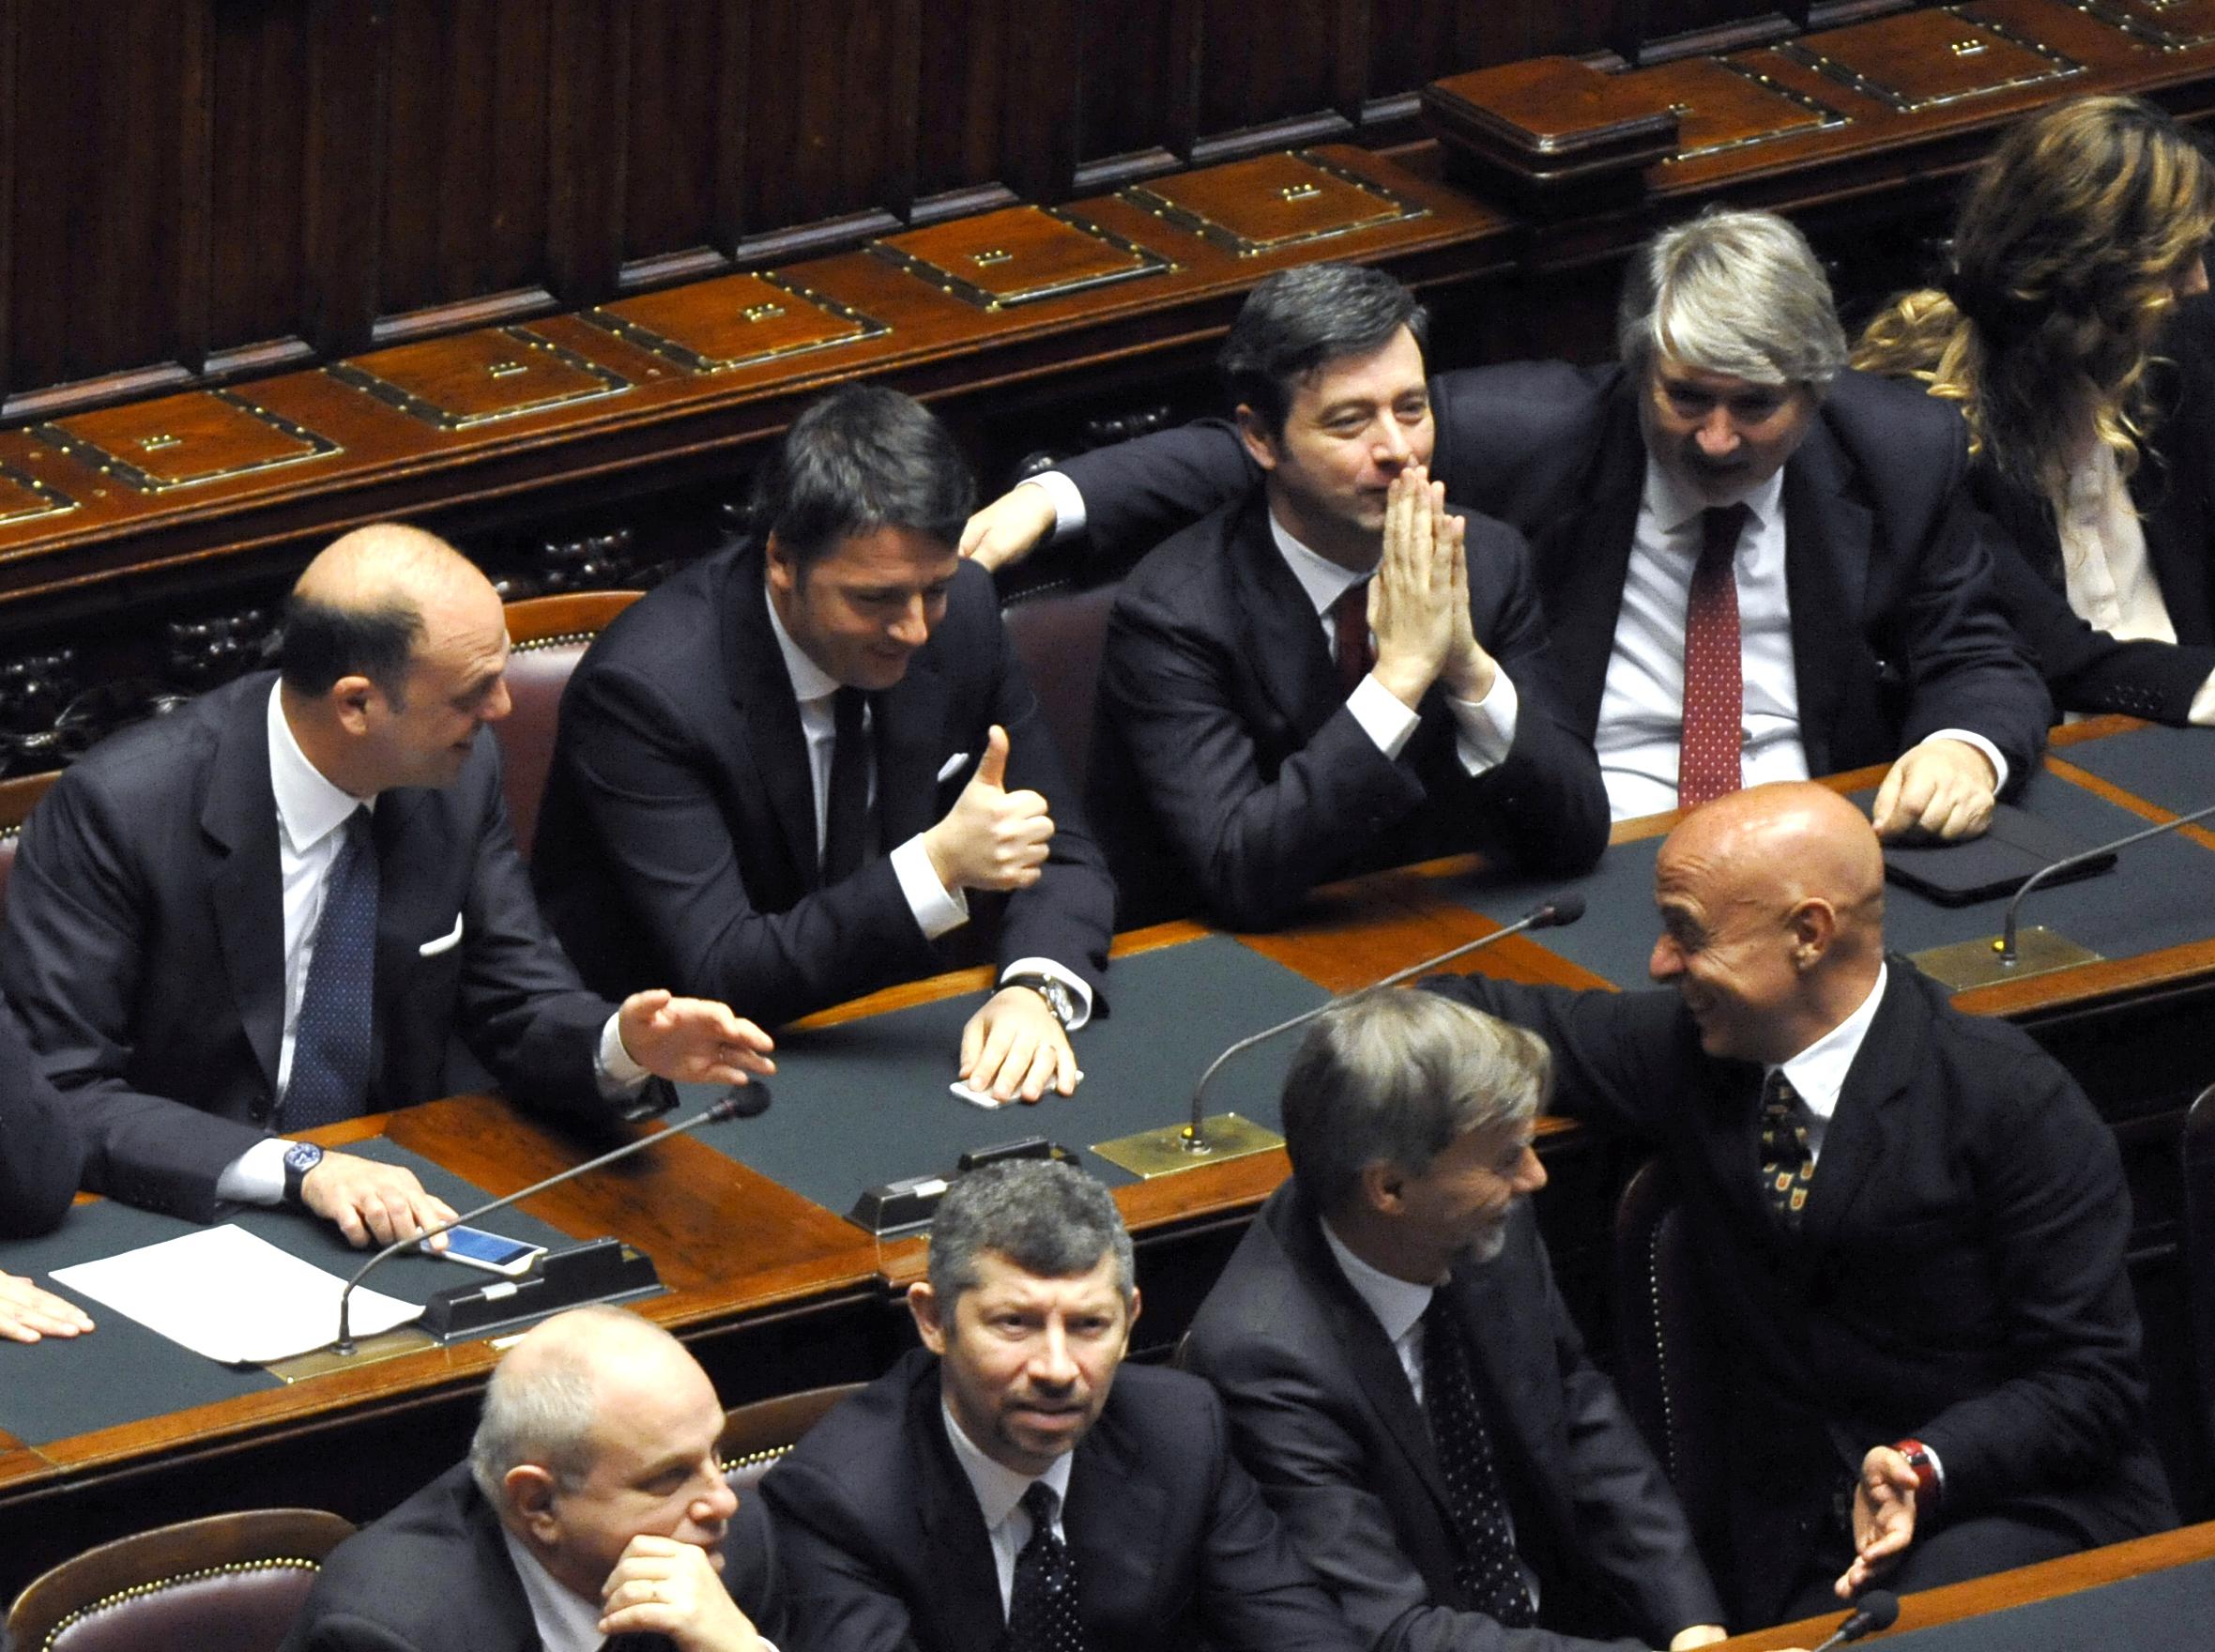 Pollice alzato del premier Matteo Renzi all'indirizzo del sottosegretario alla presidenza dei ministri Marco Minniti (foto Adnkronos/Cristiano Camera)